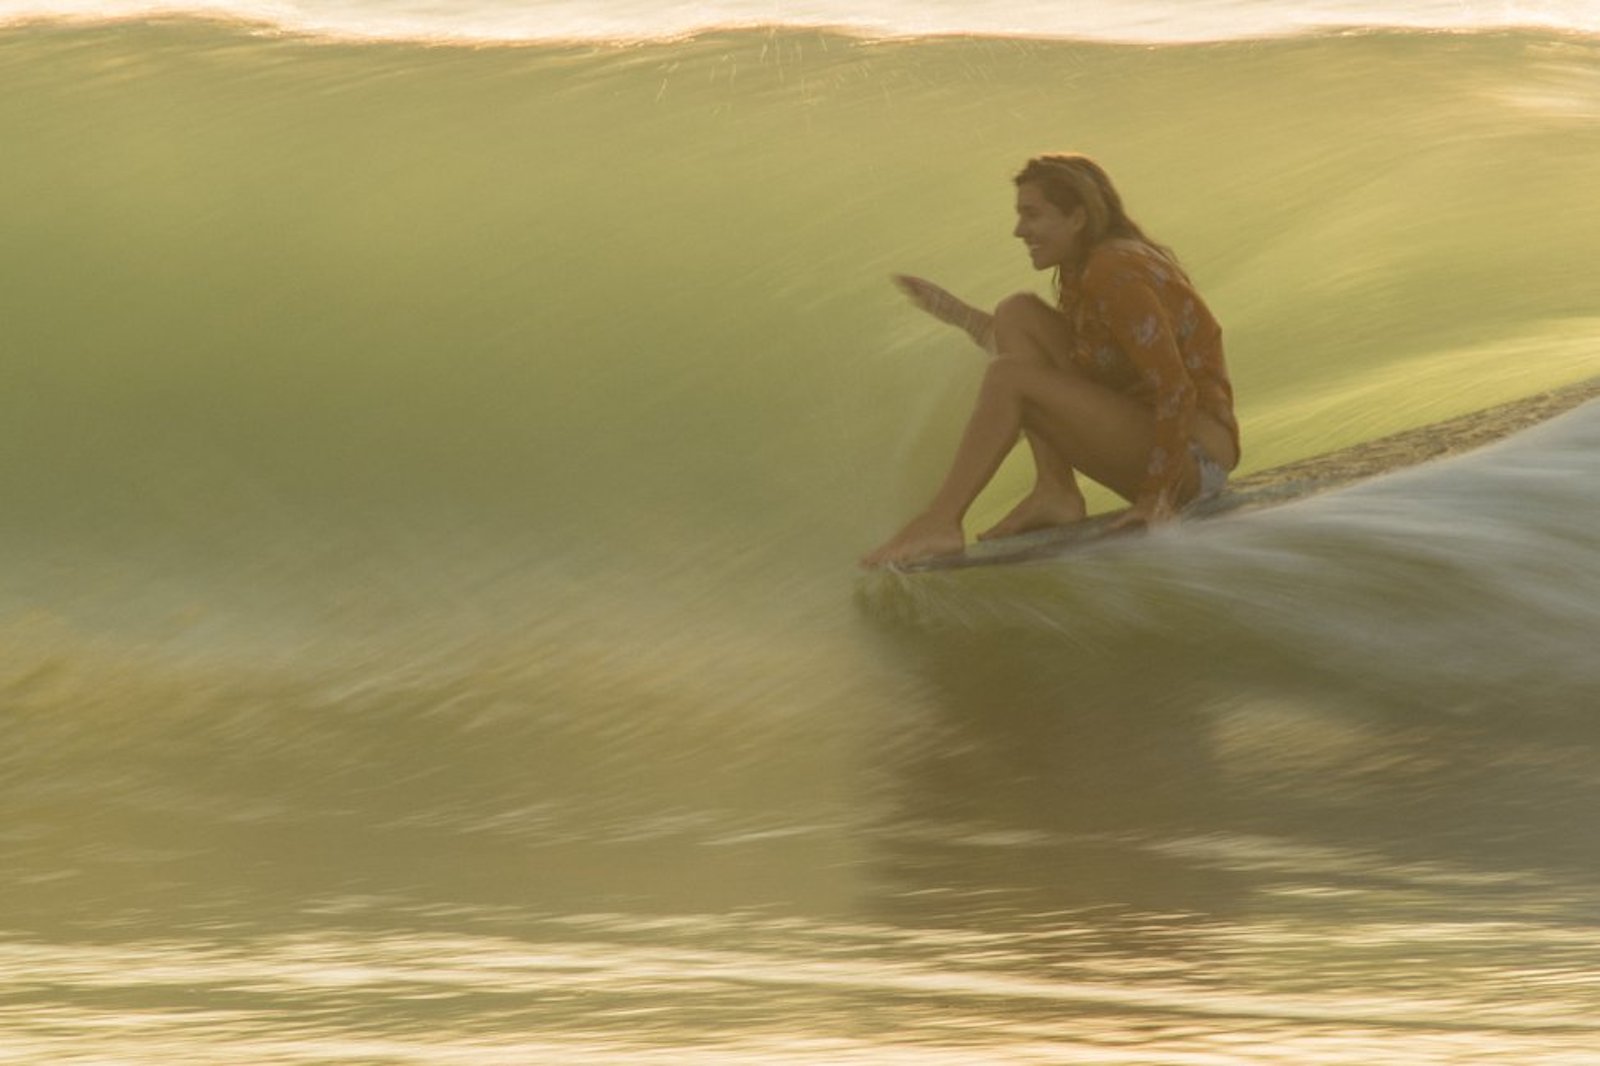 Surffilmnacht: Frauen können surfen!